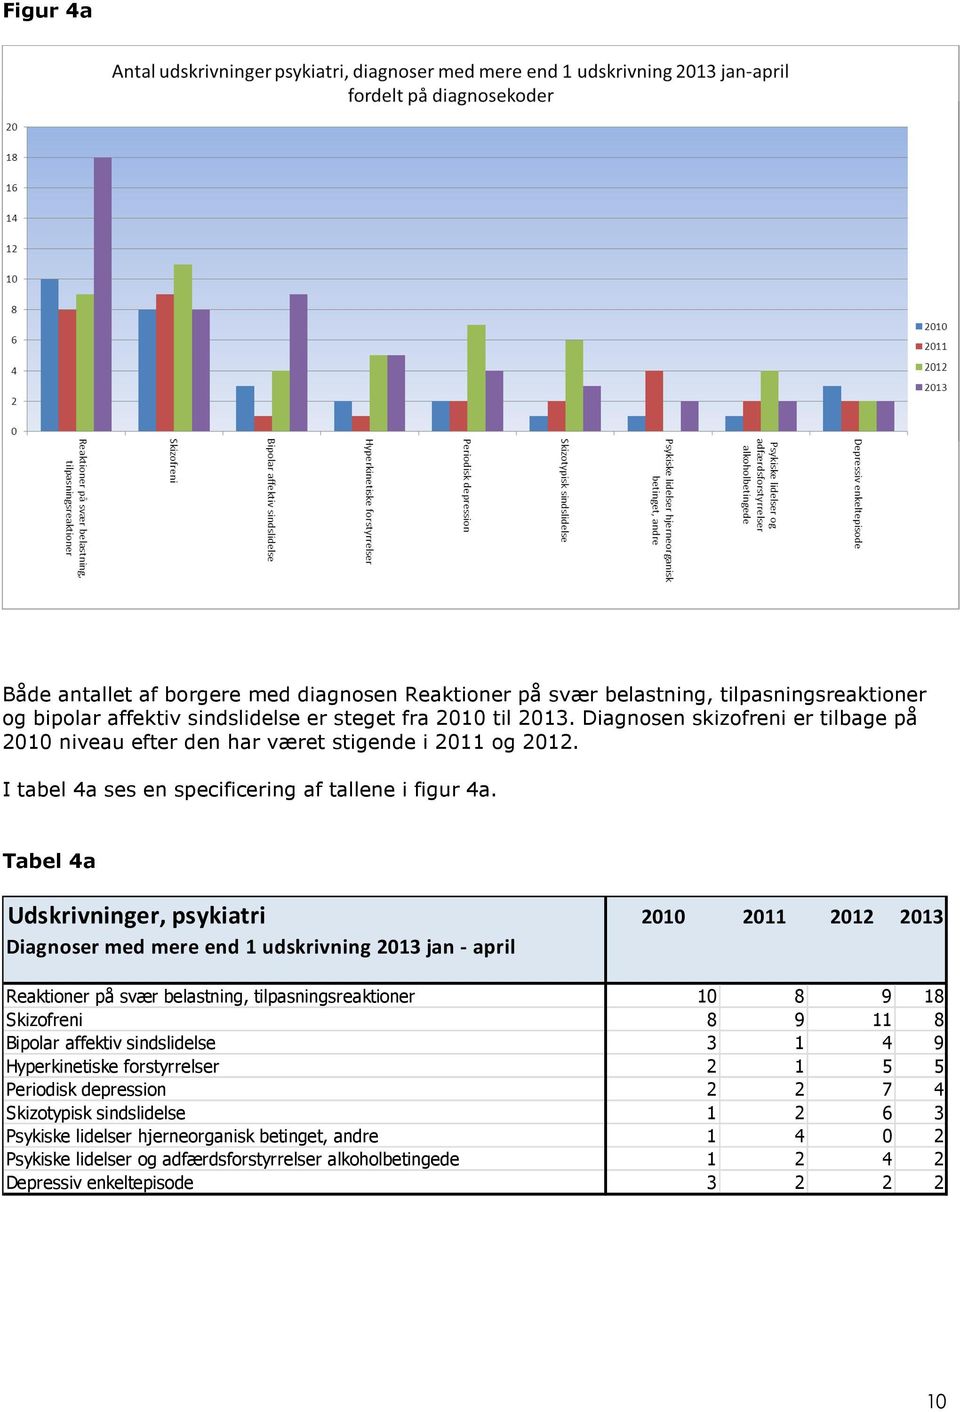 Tabel 4a Udskrivninger, psykiatri 2010 2011 2012 2013 Diagnoser med mere end 1 udskrivning 2013 jan - april Reaktioner på svær belastning, tilpasningsreaktioner 10 8 9 18 Skizofreni 8 9 11 8 Bipolar